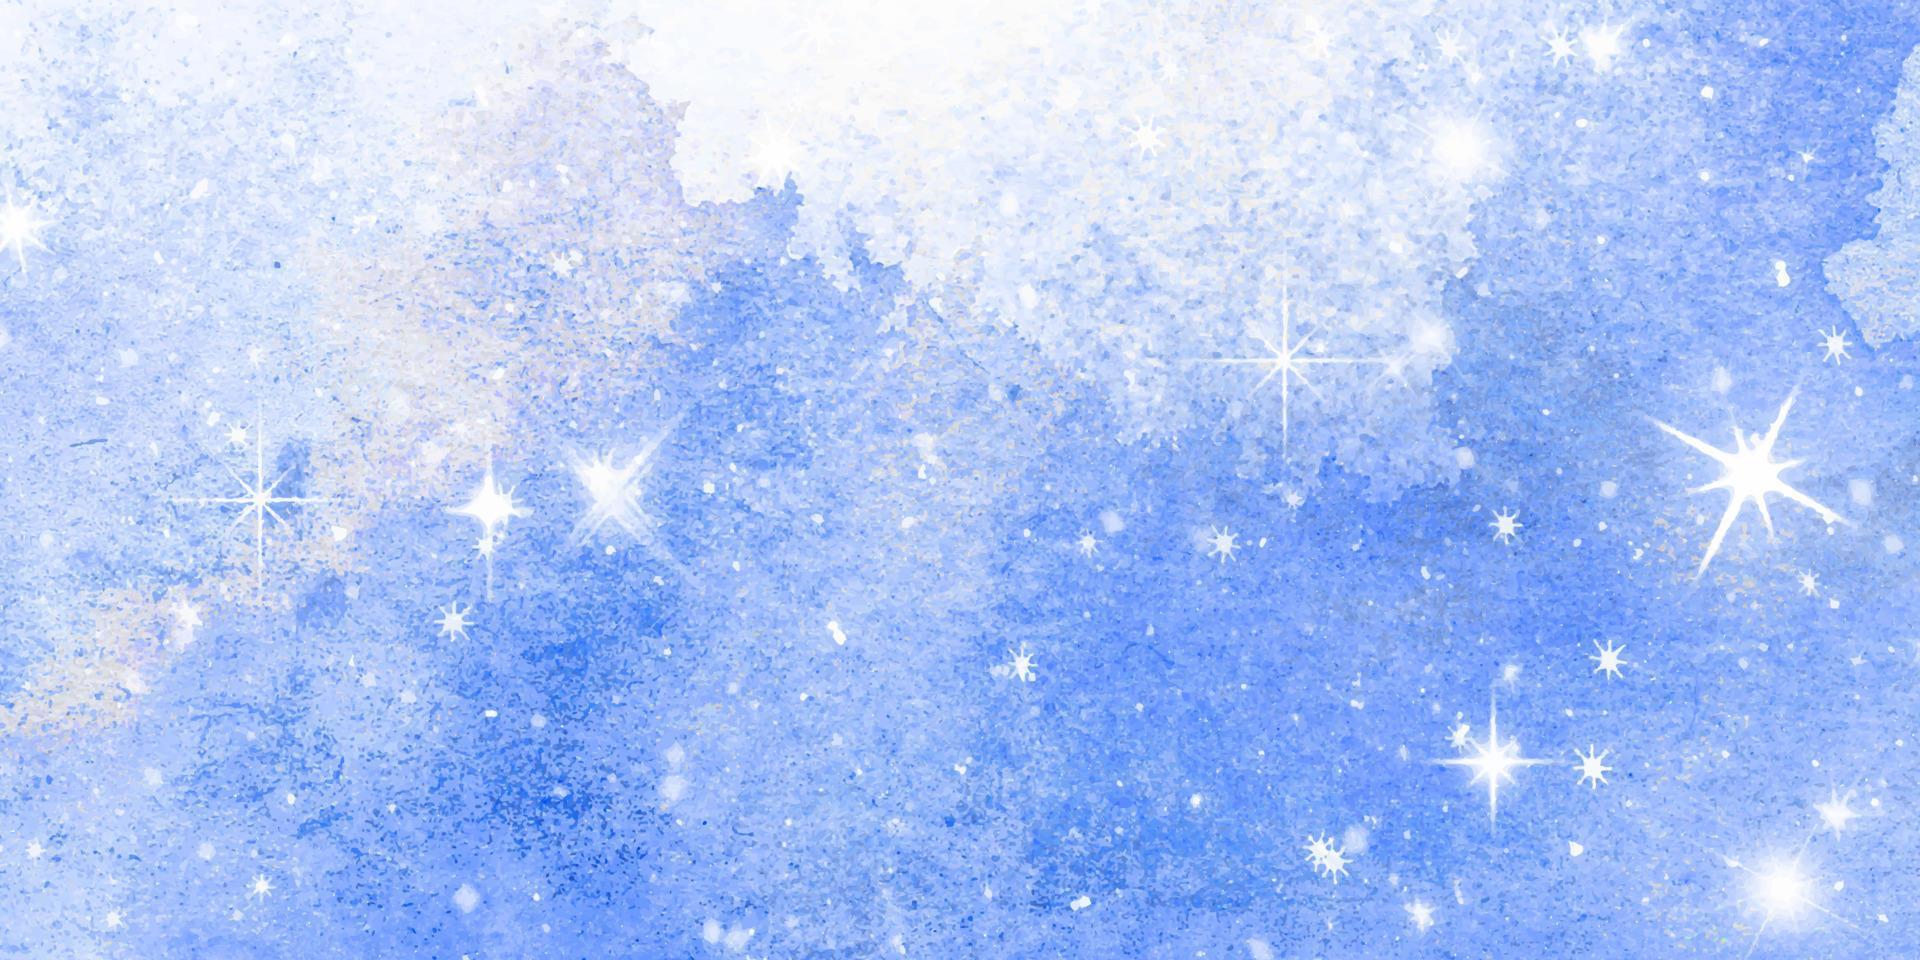 fundo aquarela da neve do inverno. textura de vetor abstrato branco. céu azul com neve caindo, floco de neve. modelo de design fantazy. pano de fundo com uma paisagem de luz fria